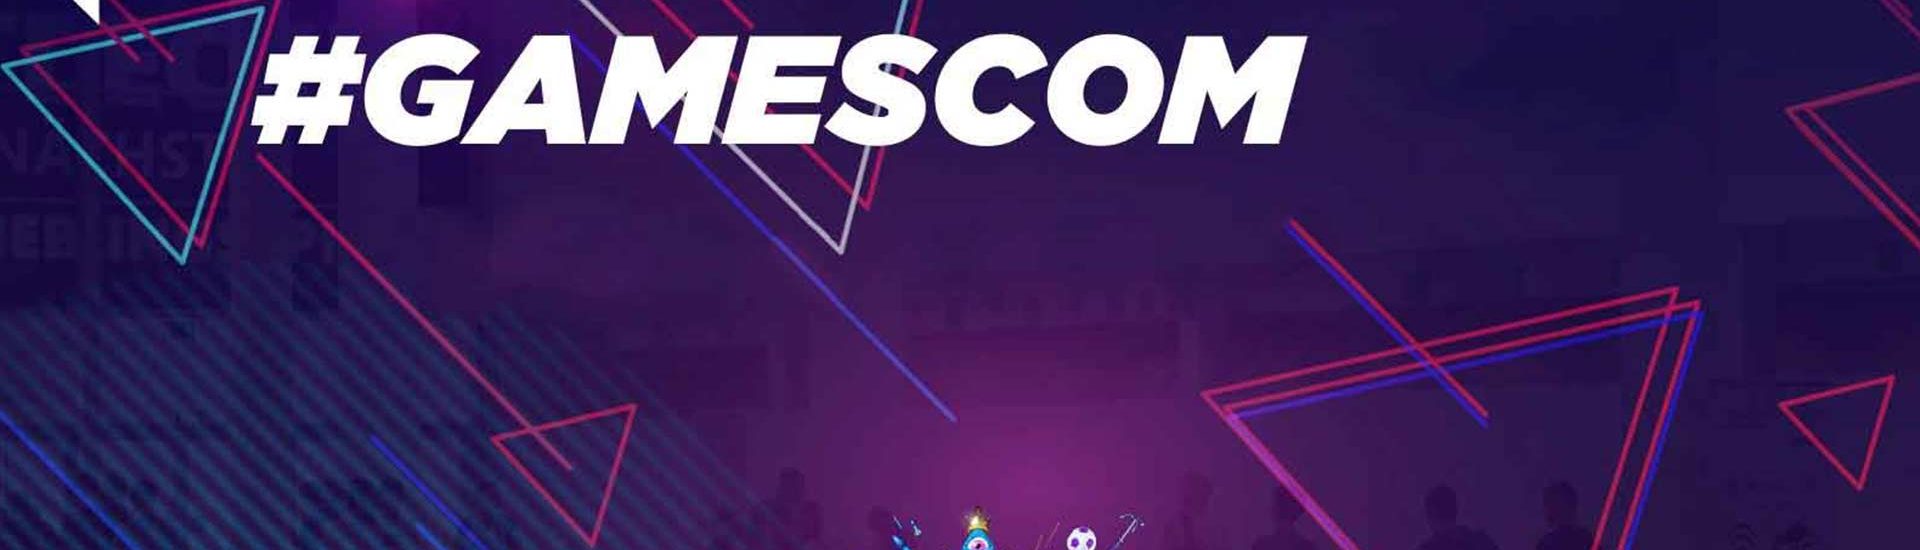 gamescom: Run auf die Tickets ist gestartet